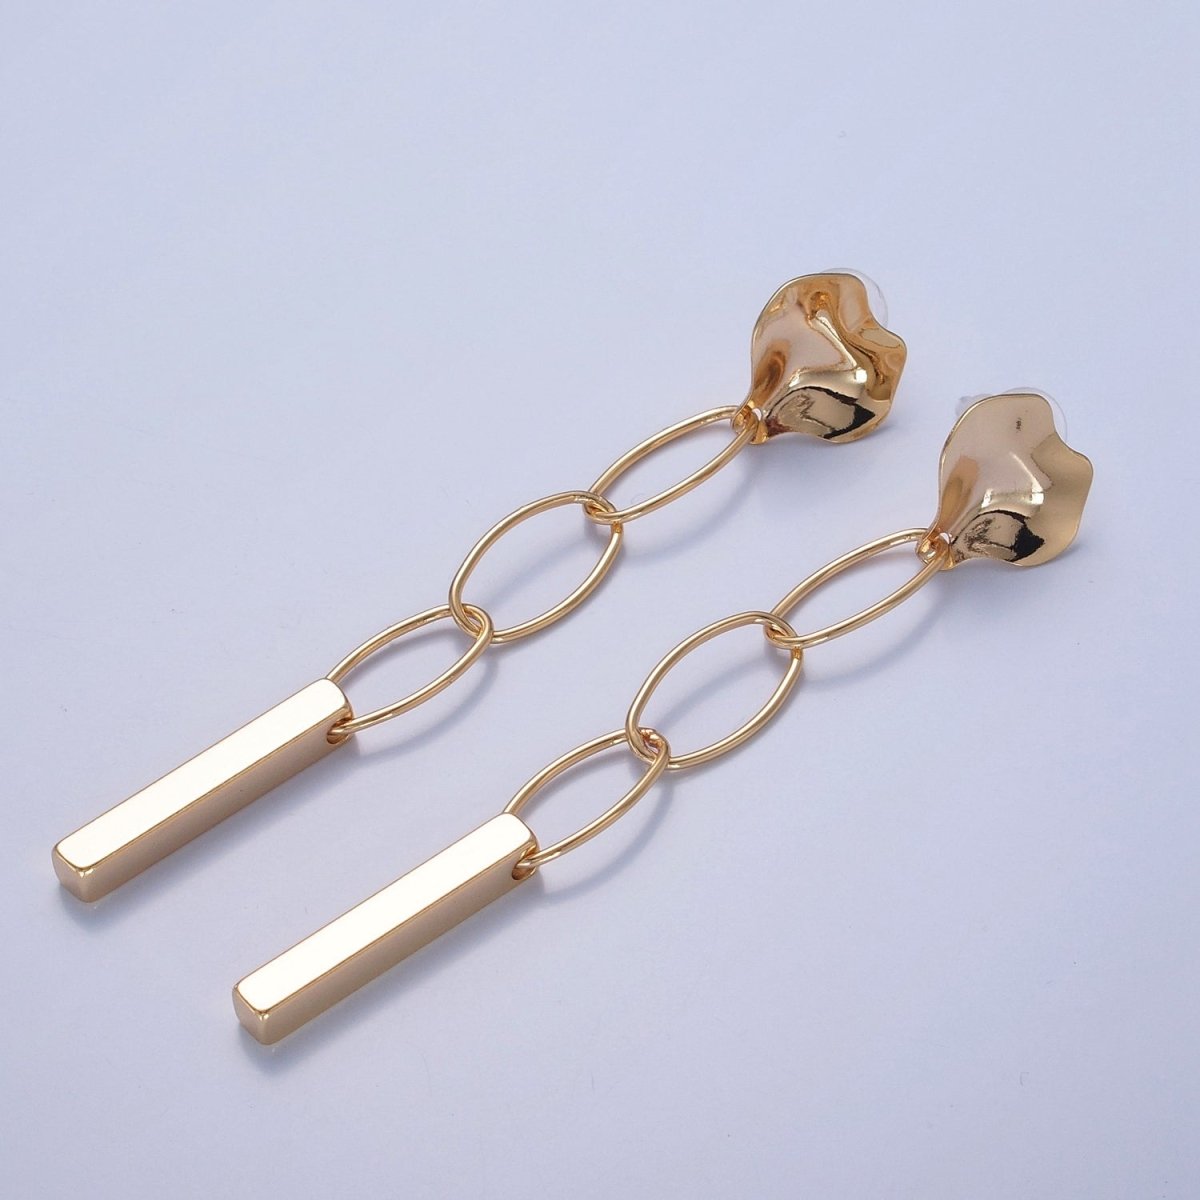 Simple Bar Drop Earrings Dainty Earrings Long Dangle Stick Earrings in Gold Oval Link Chain Earrings Everyday Earrings V-395 - DLUXCA